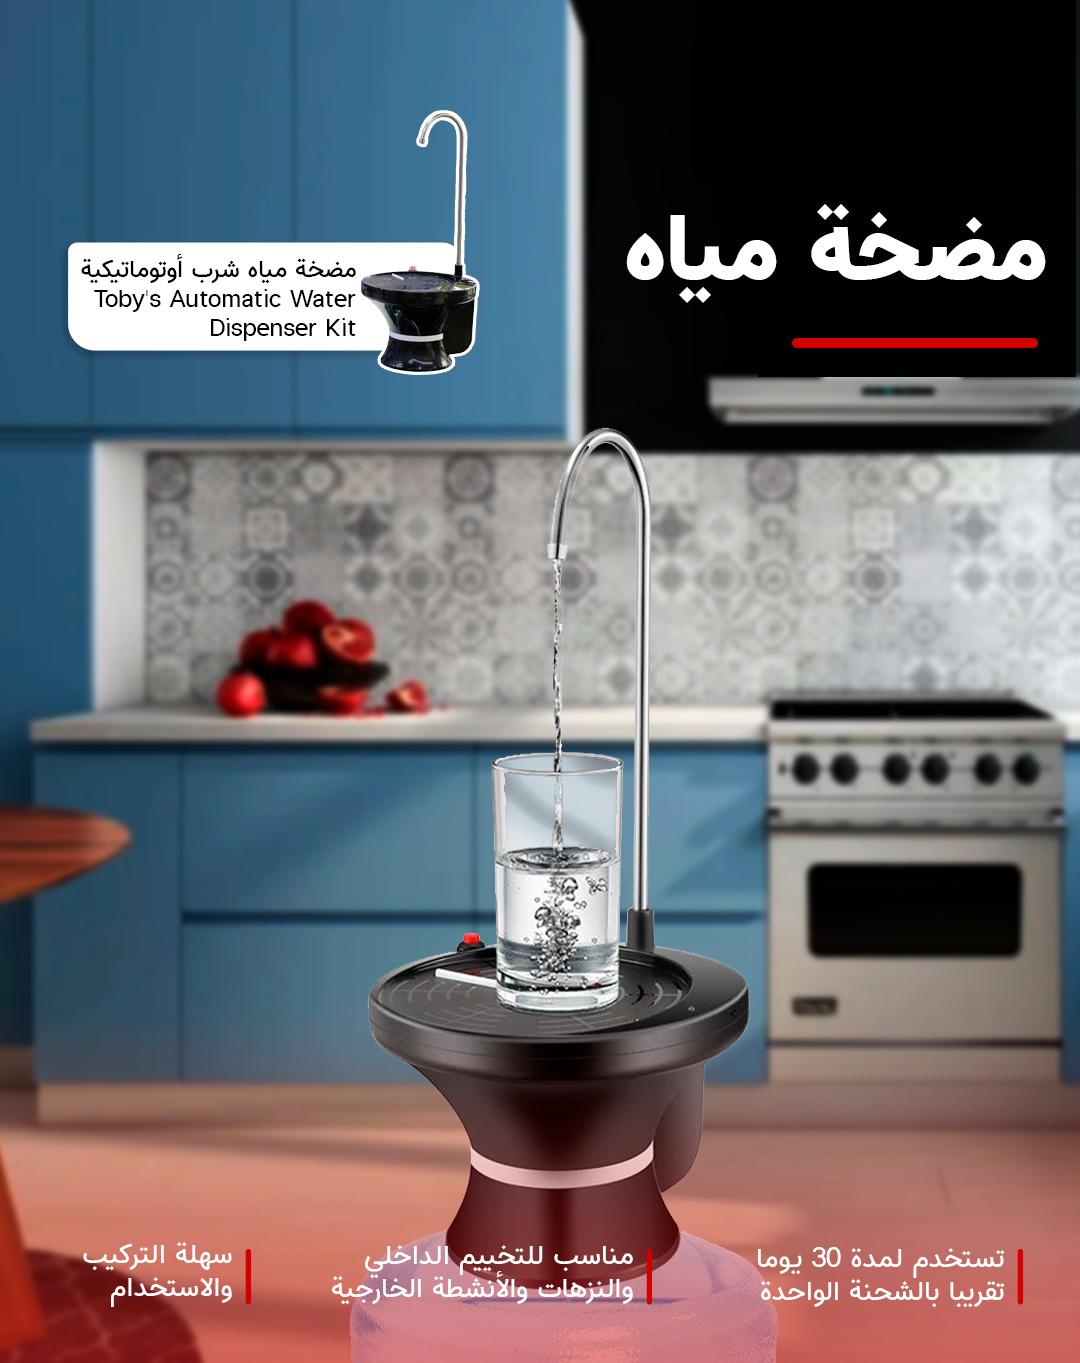 مضخة ماء للرحلات أوتوماتيكية توبيسToby's Automatic Water Dispenser Kit